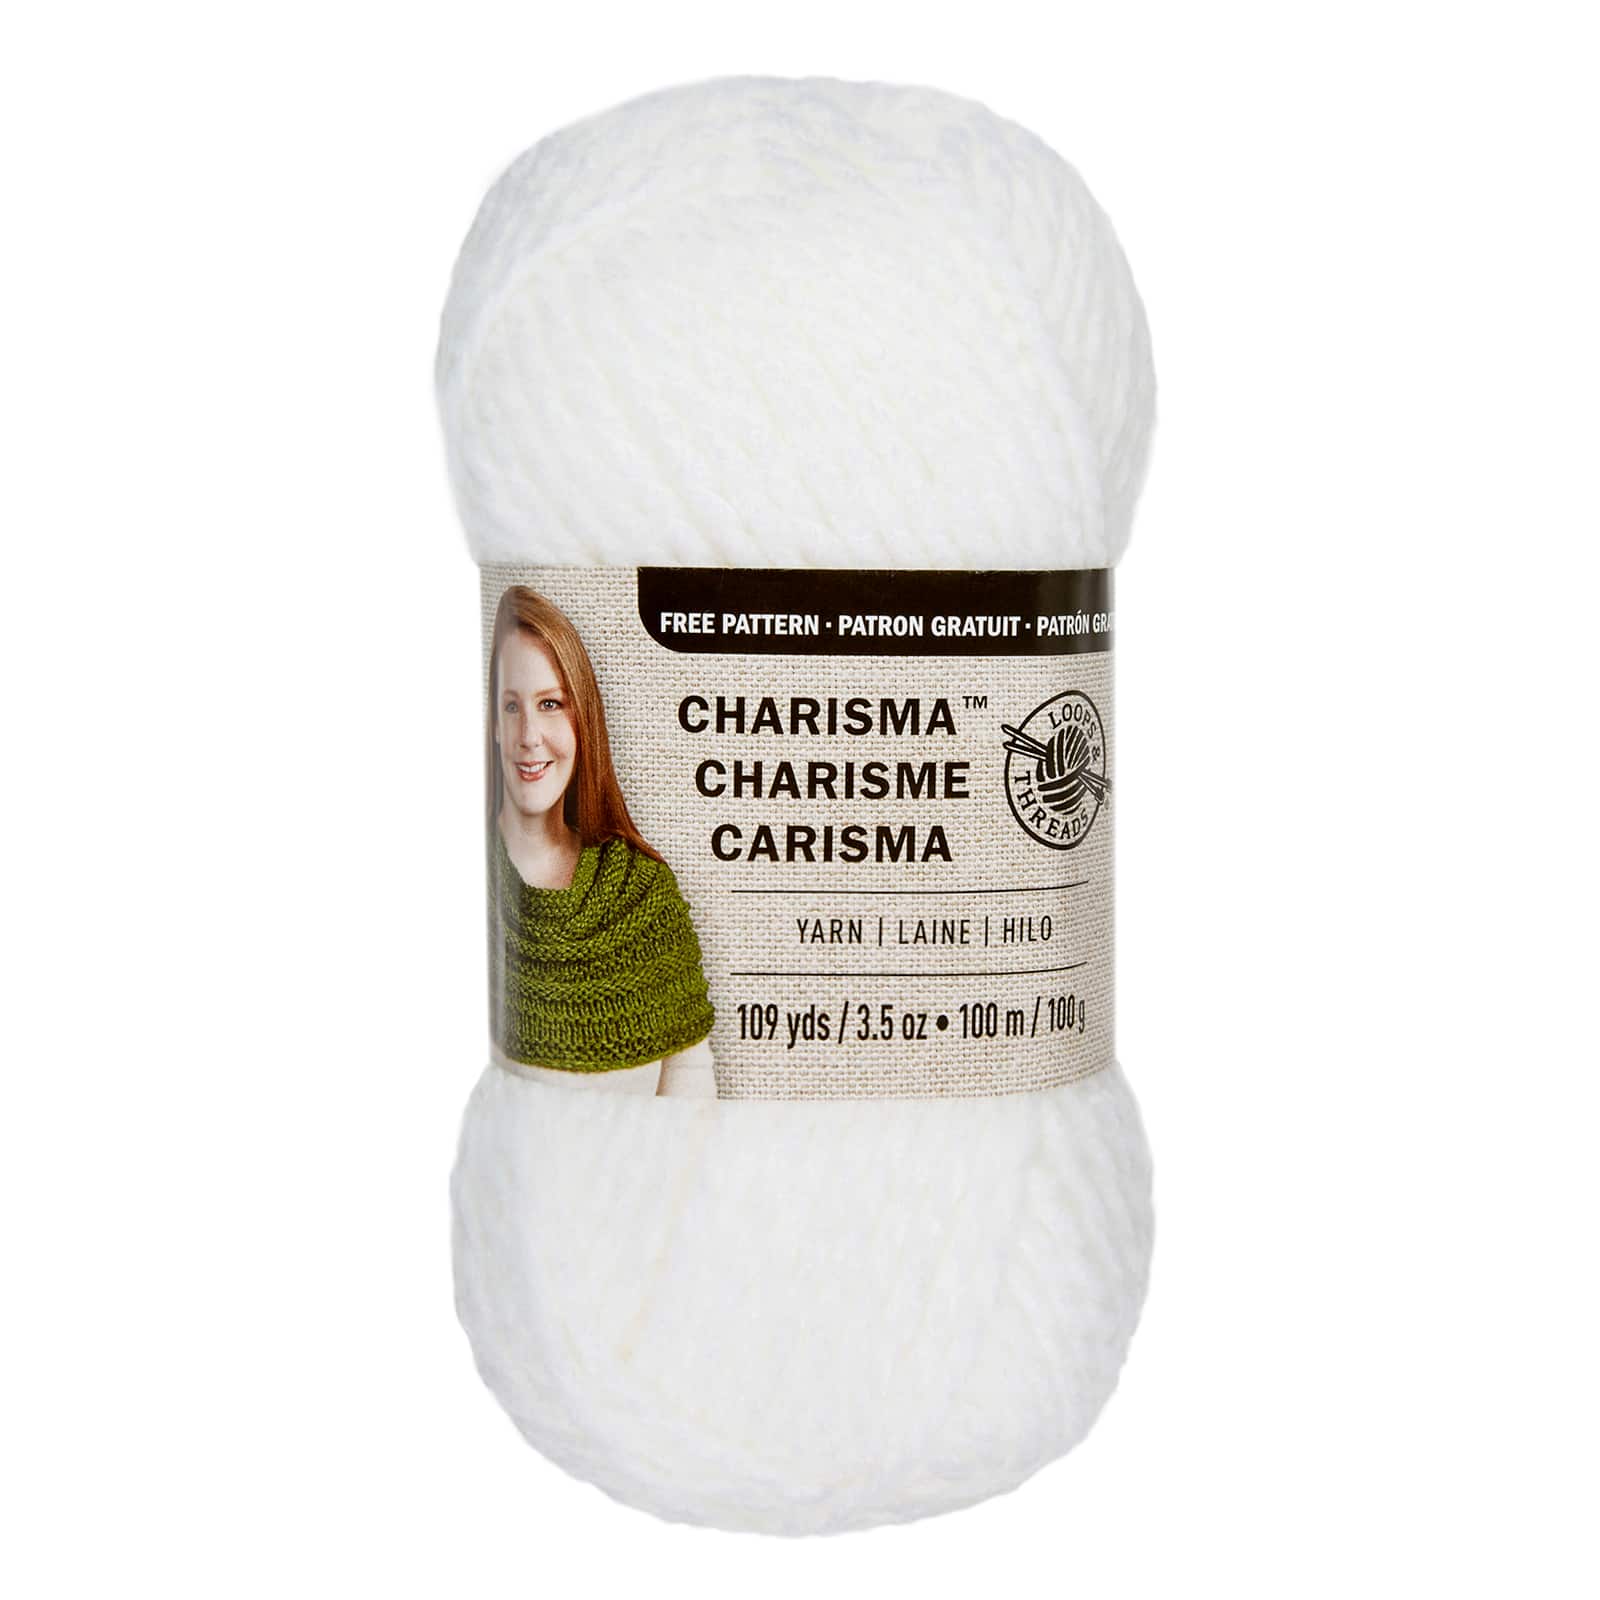 Charisma® Yarn by Loops & Threads®